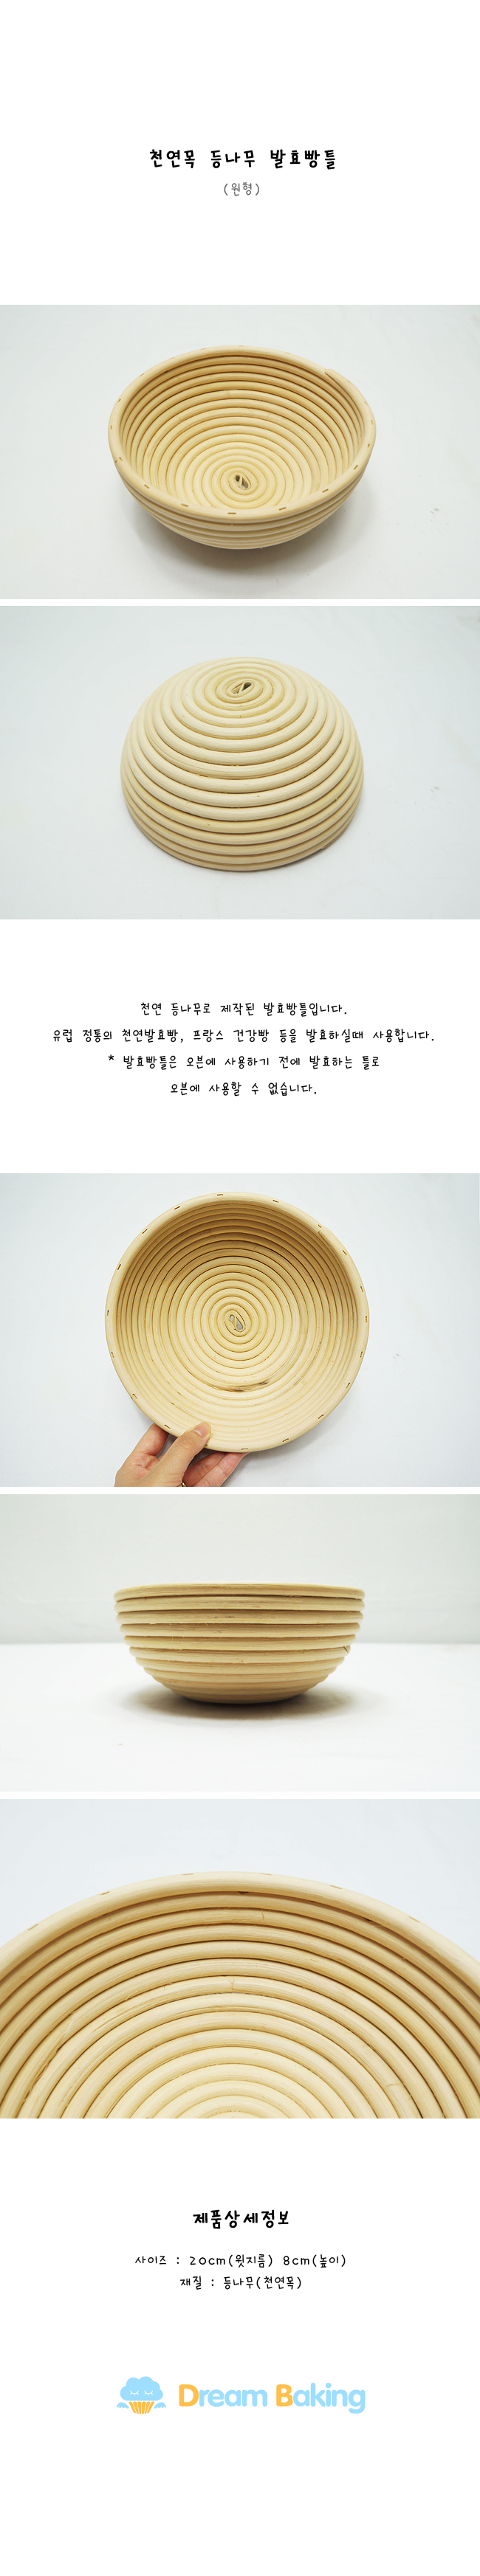 등나무발효빵틀원형.jpg